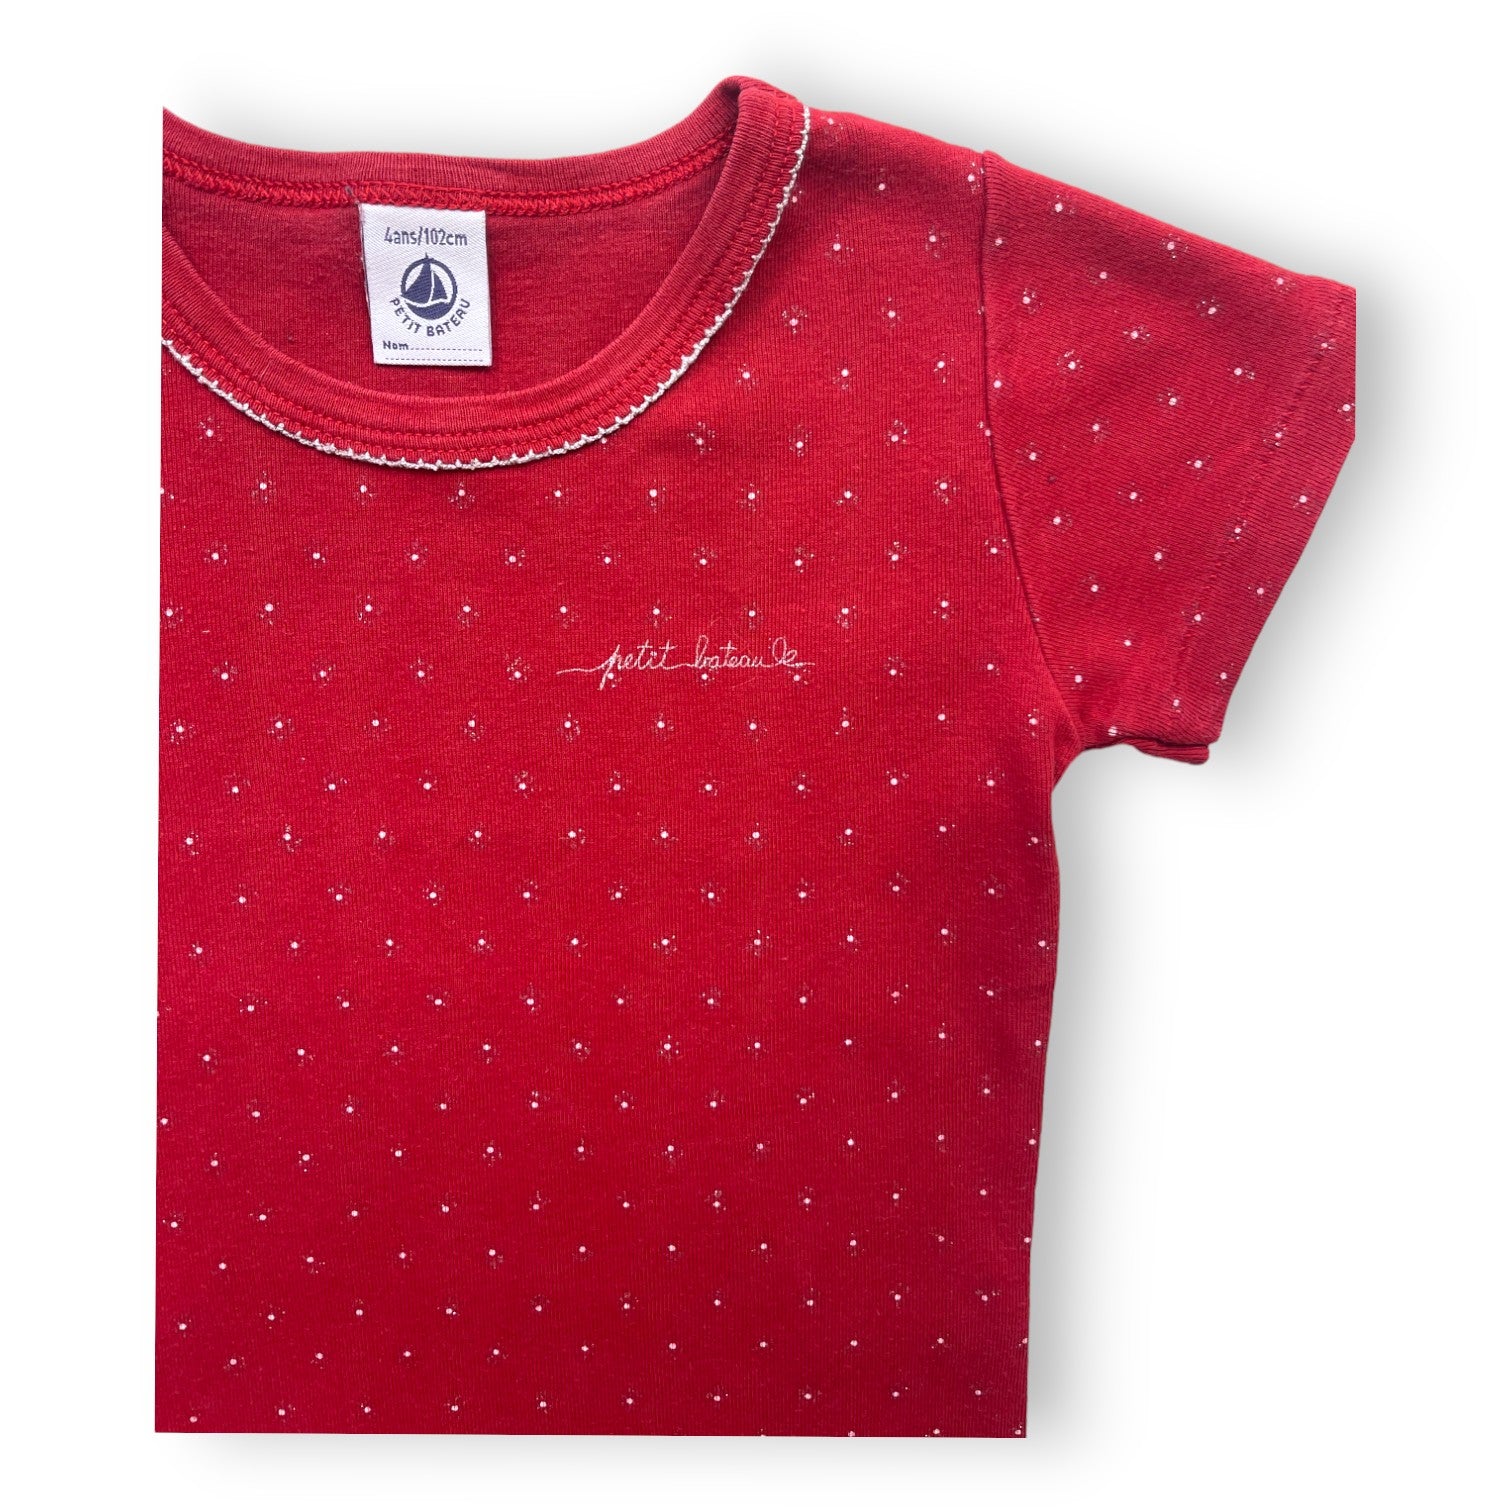 PETIT BATEAU - T shirt manches courtes rouge à pois - 4 ans